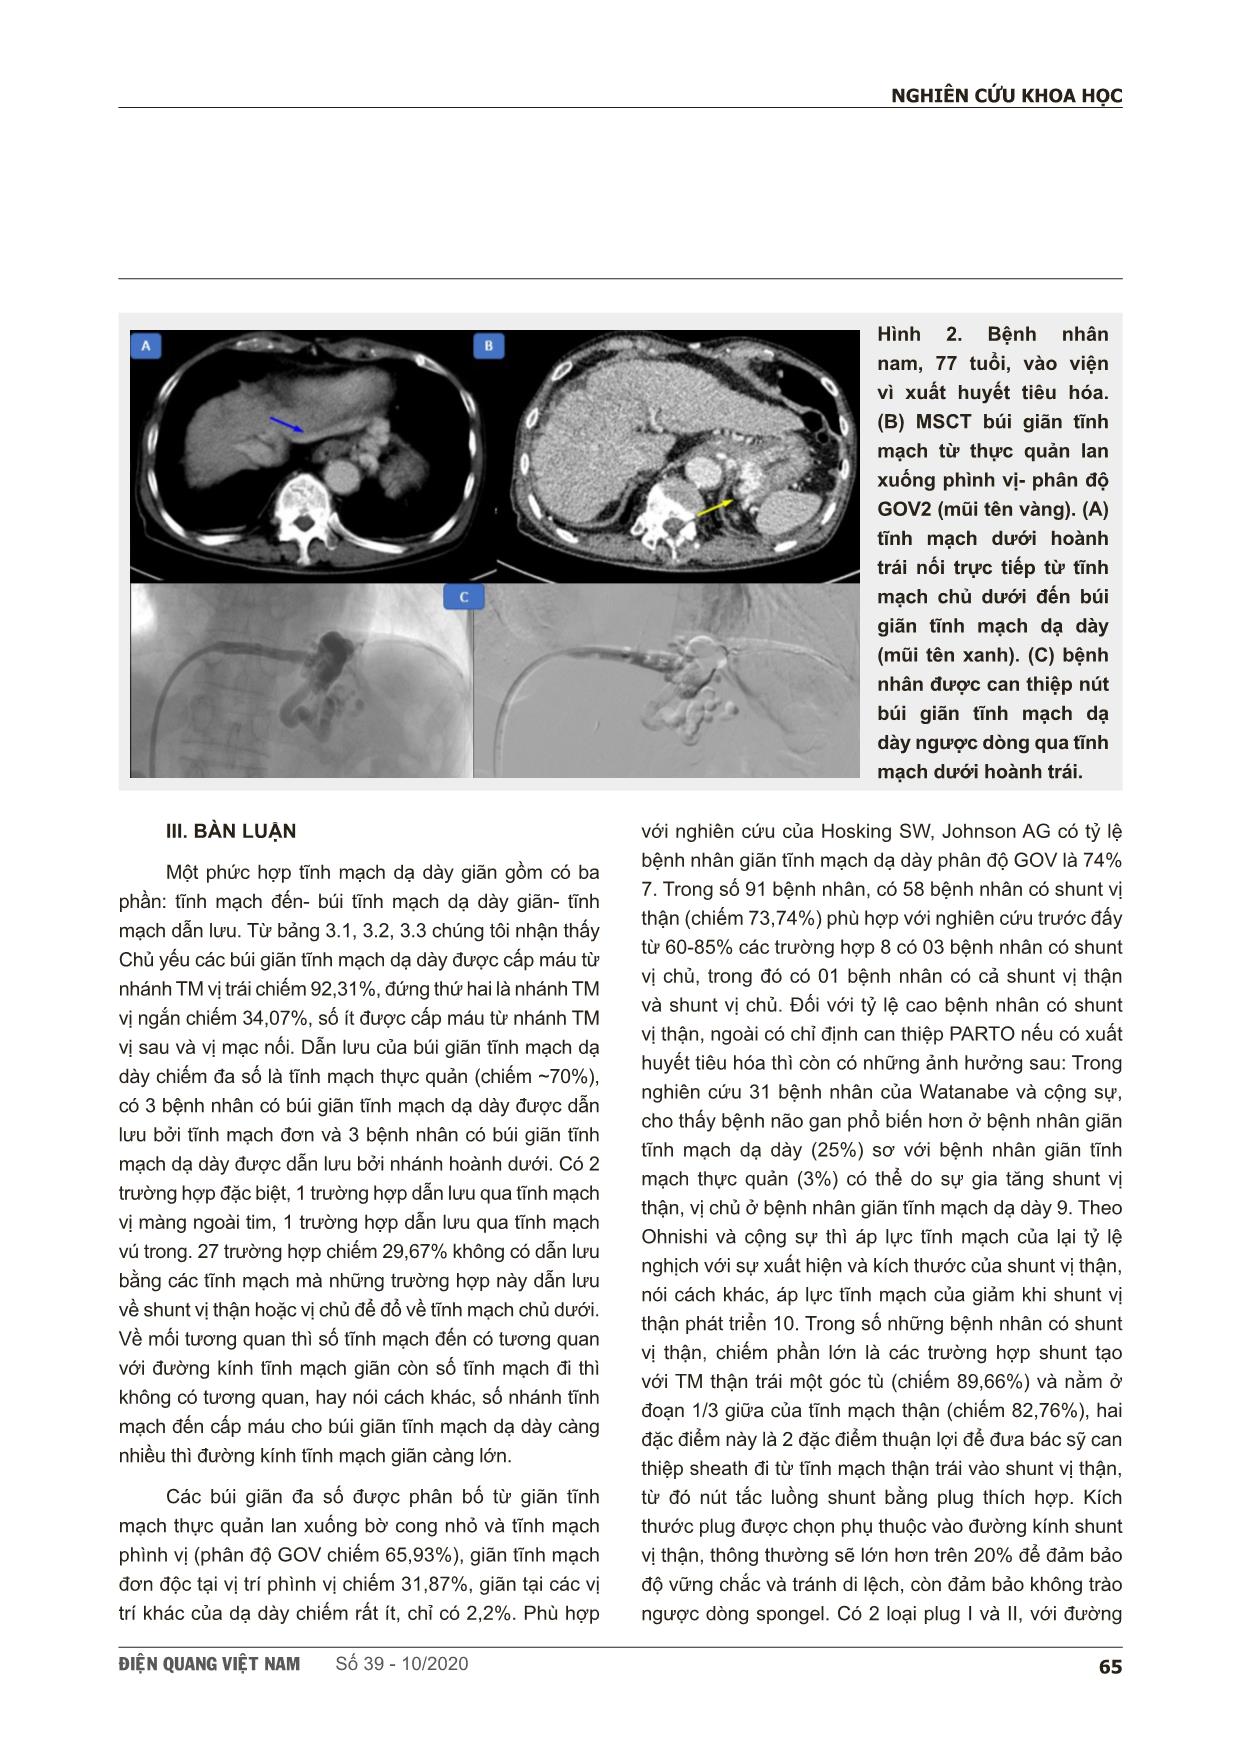 Nghiên cứu đặc điểm búi giãn tĩnh mạch dạ dày ở bệnh nhân xơ gan trên hình ảnh cắt lớp vi tính đa dãy để chỉ định can thiệp parto trang 5